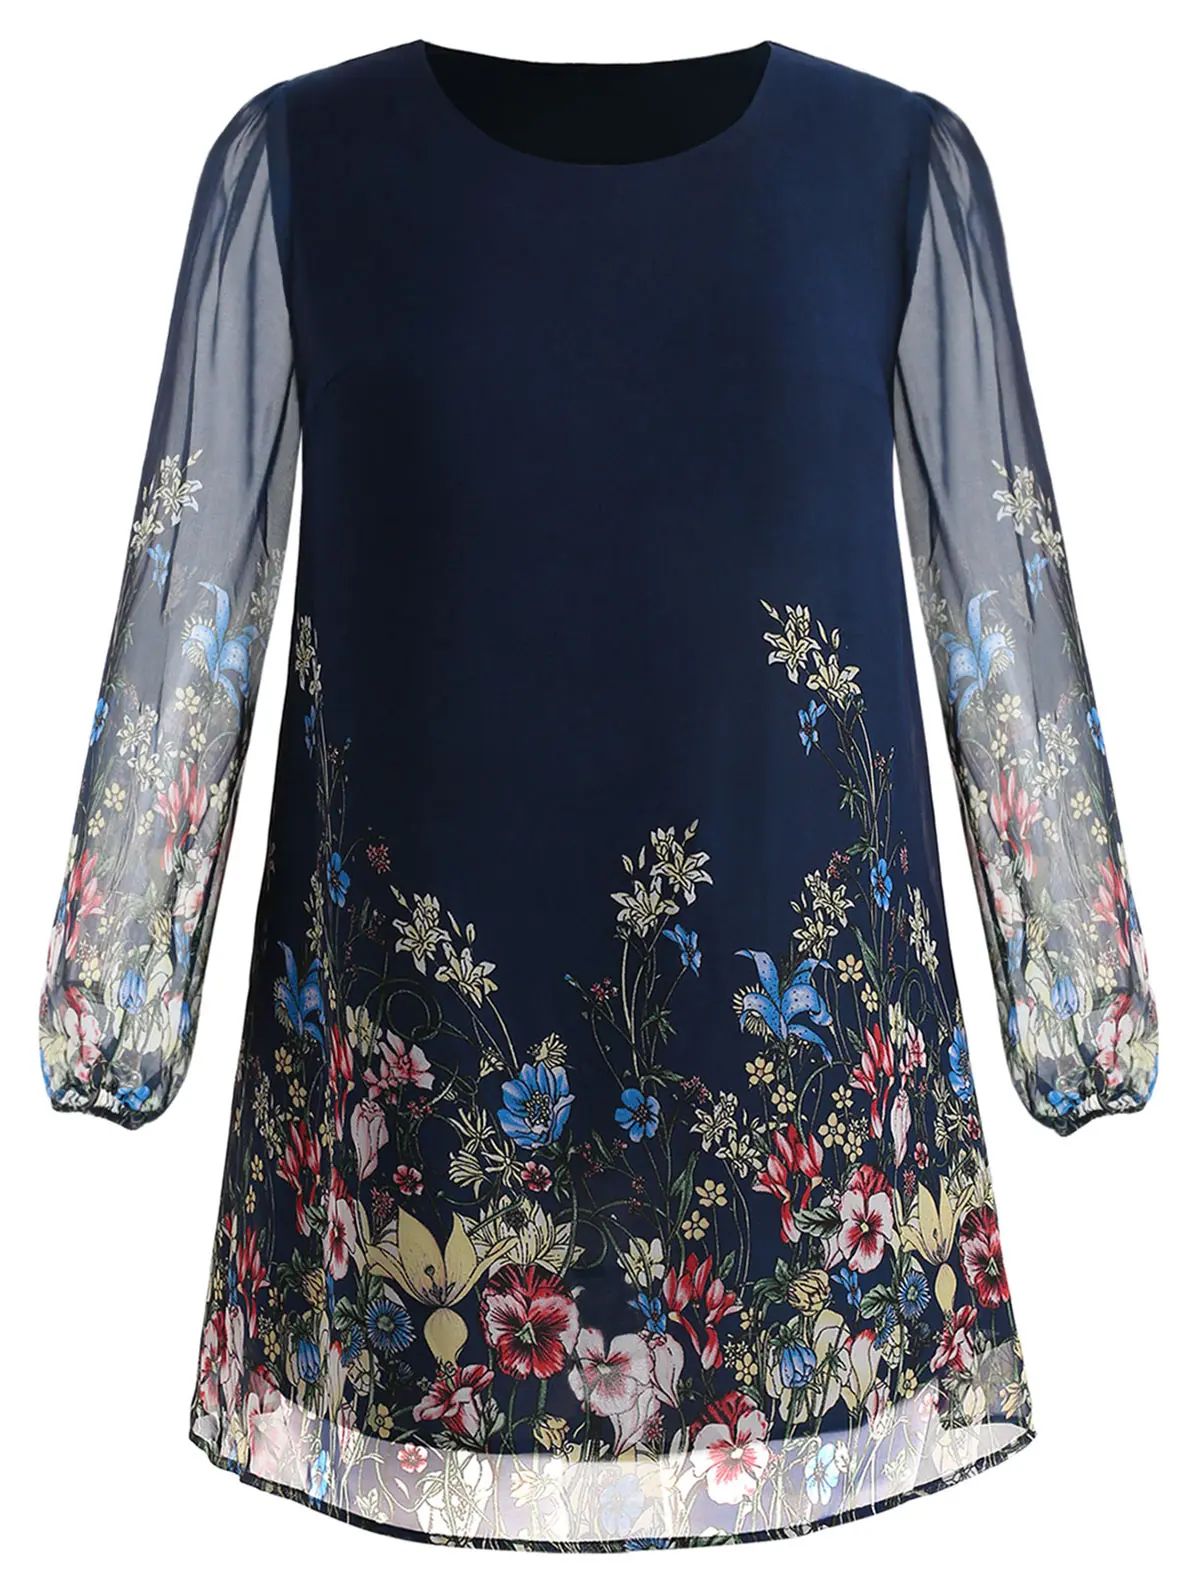 Wipalo темно-синее платье-туника с цветочной вышивкой размера плюс, весенне-летнее элегантное платье большого размера s с этническим цветочным принтом